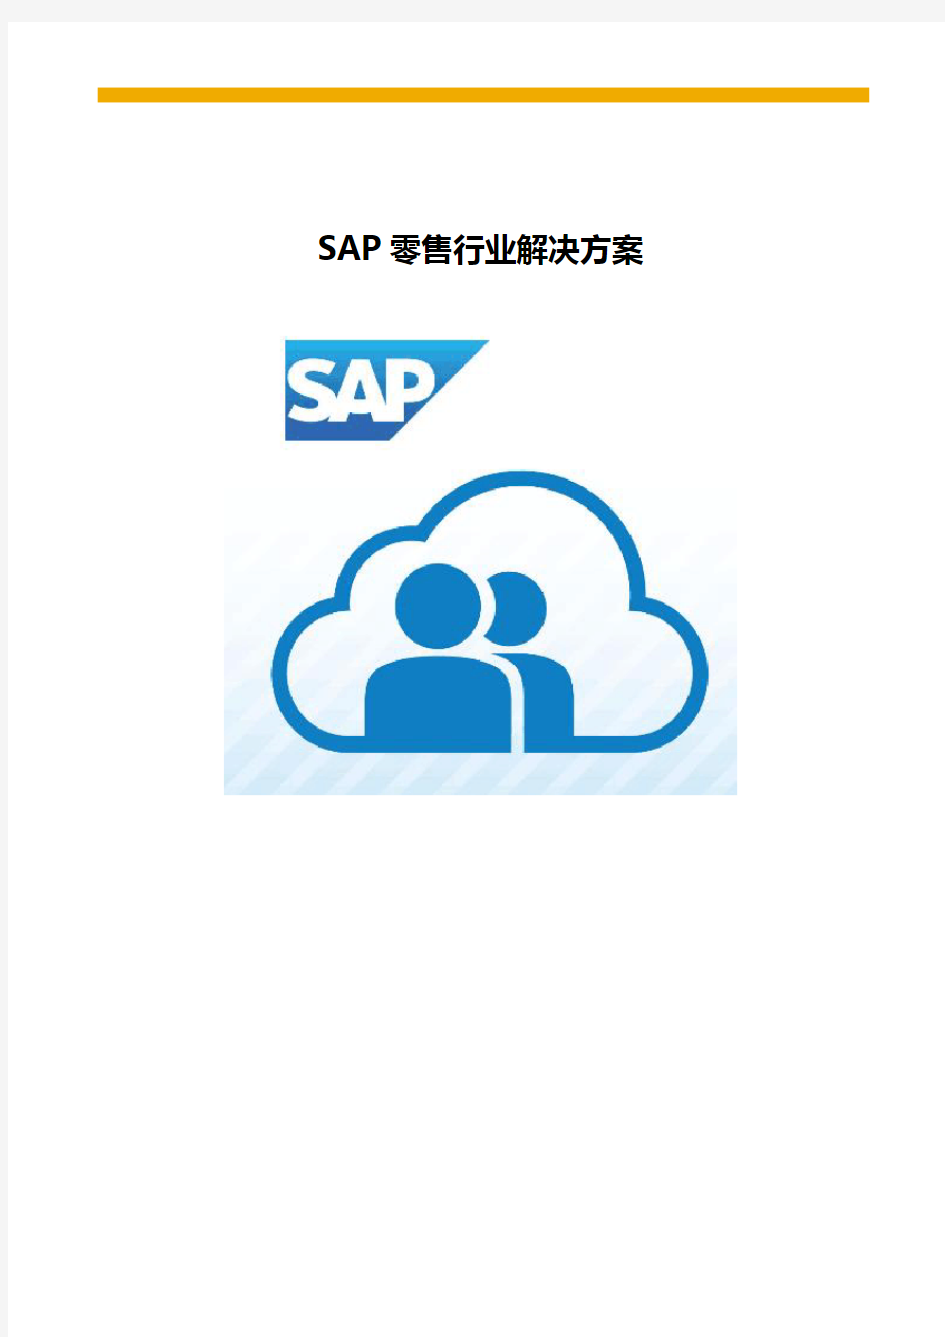 SAP零售行业解决方案